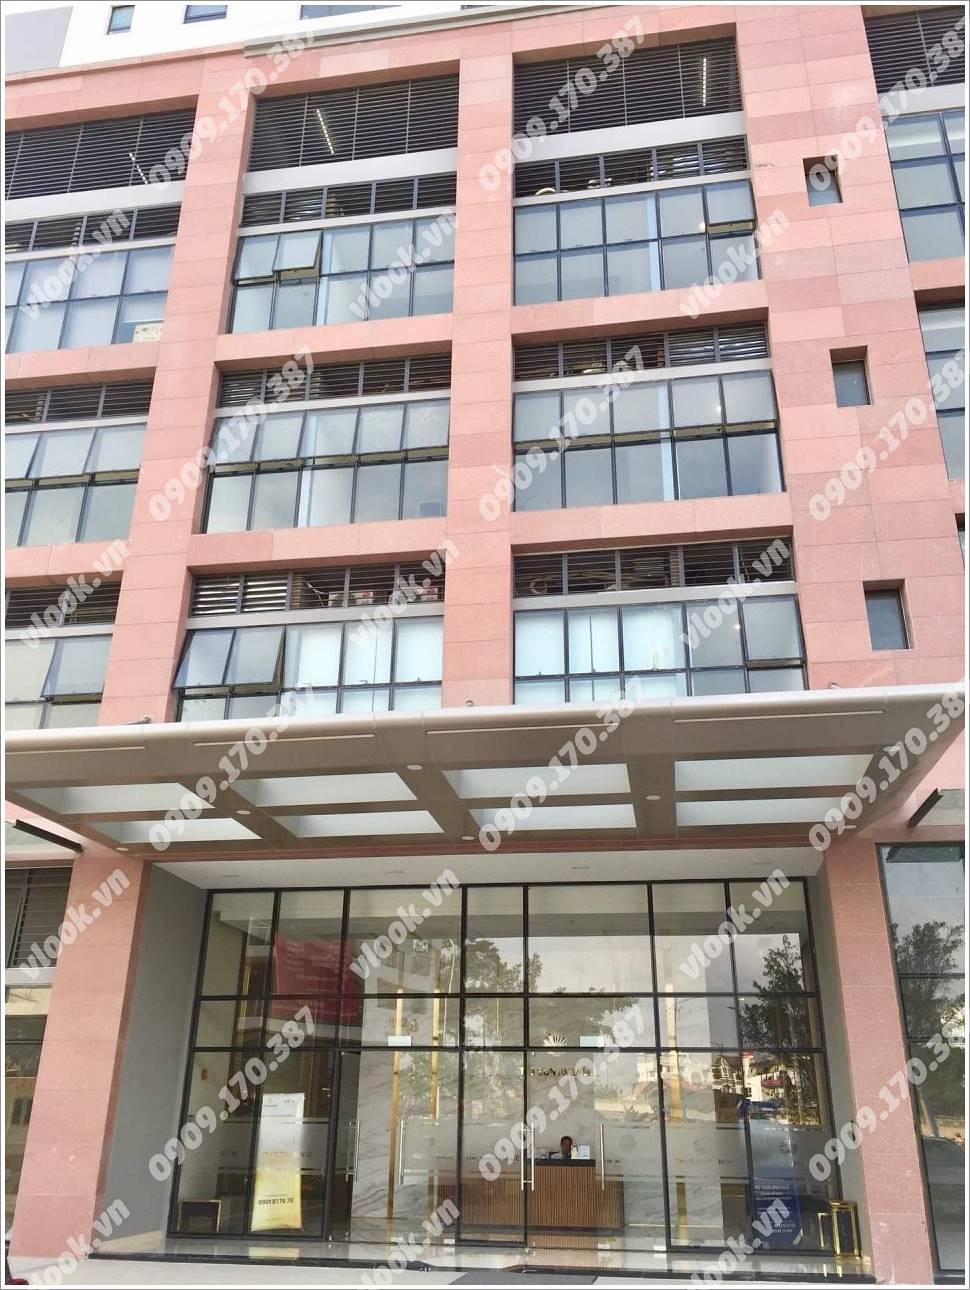 Mặt trước cao ốc cho thuê văn phòng The Sun Avenue, Mai Chí Thọ, Quận 2, TPHCM - vlook.vn